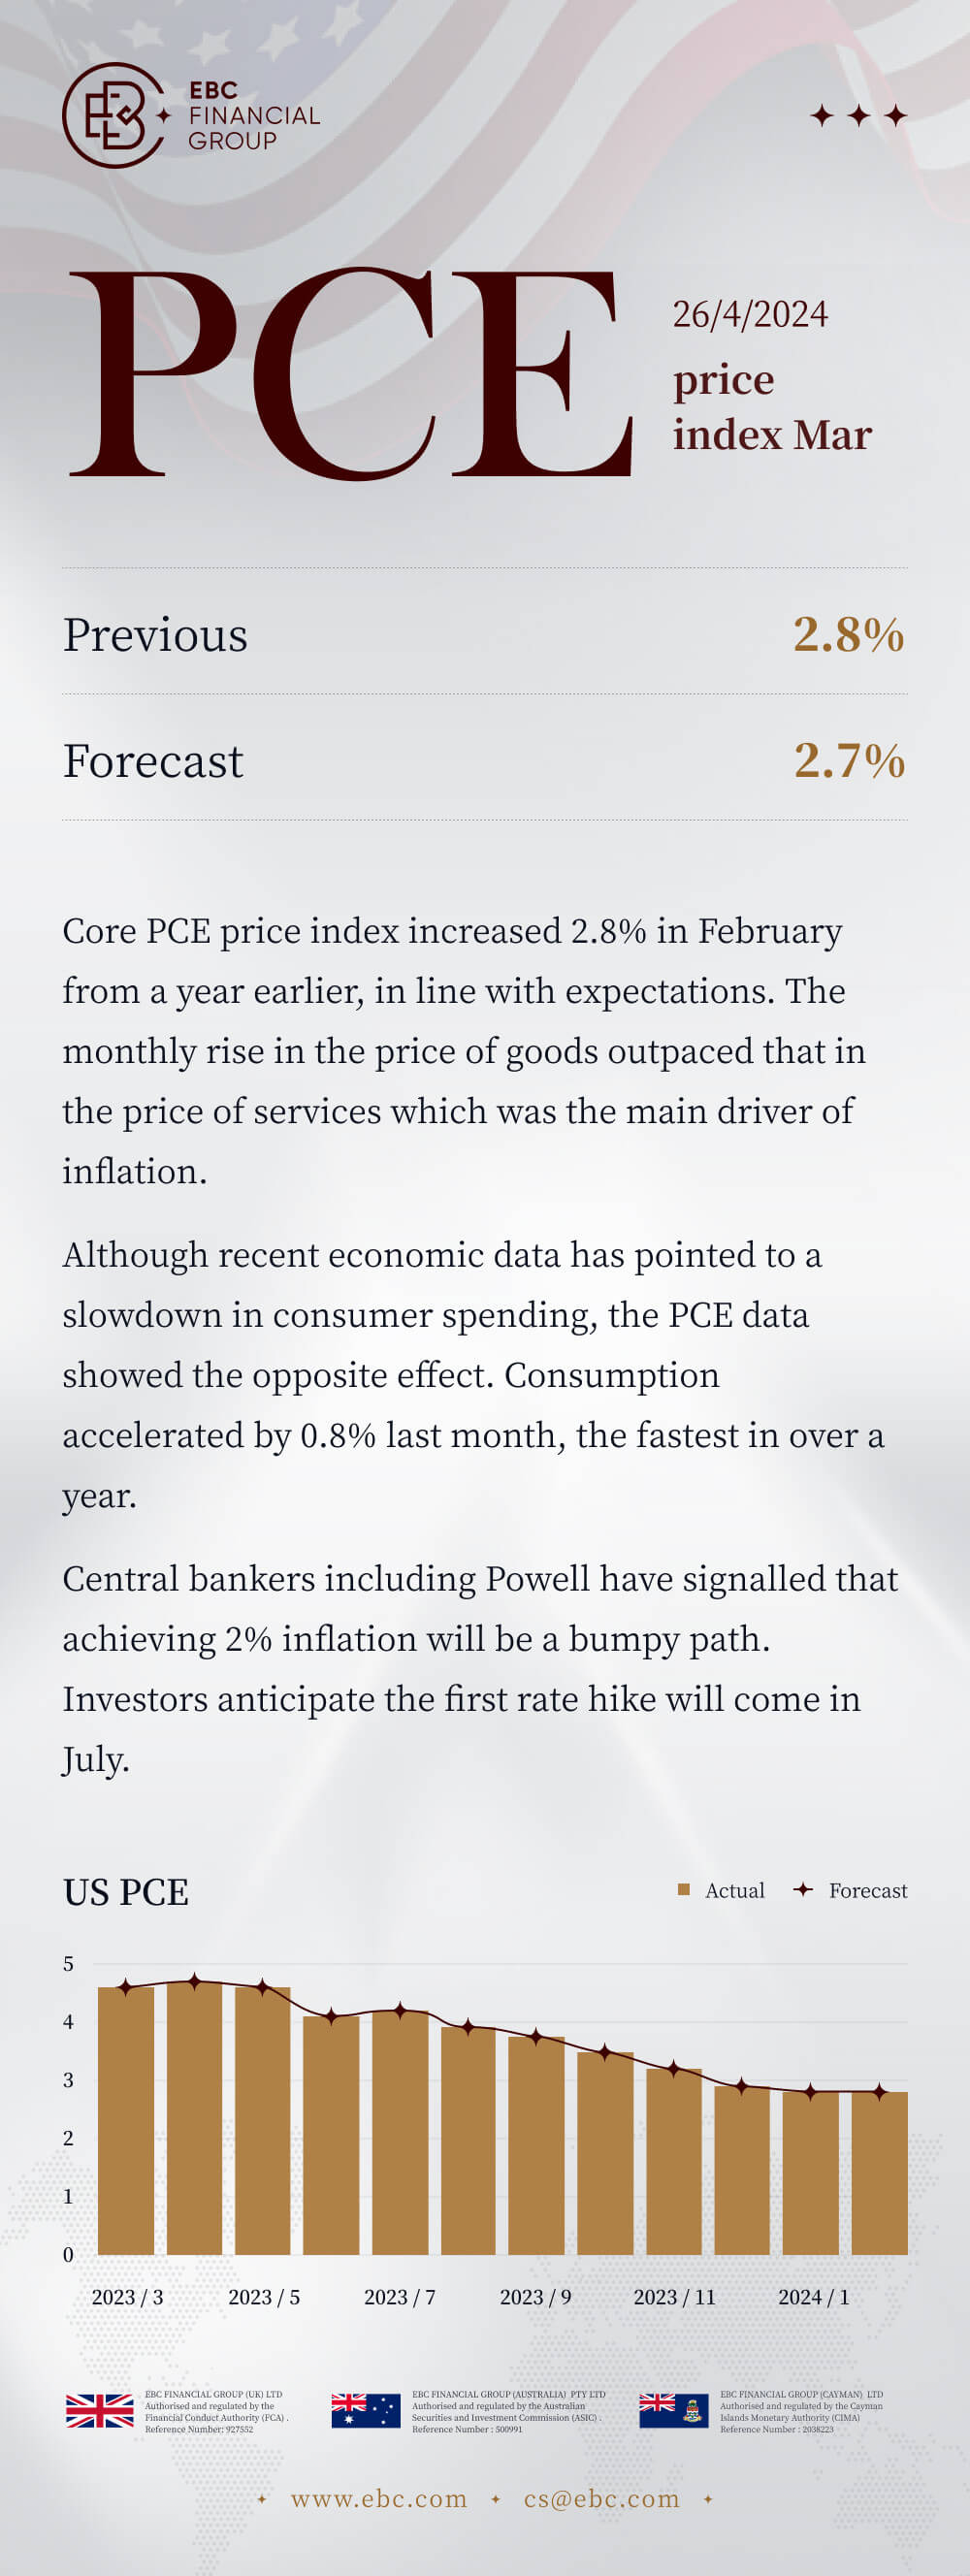 PCE price index Mar